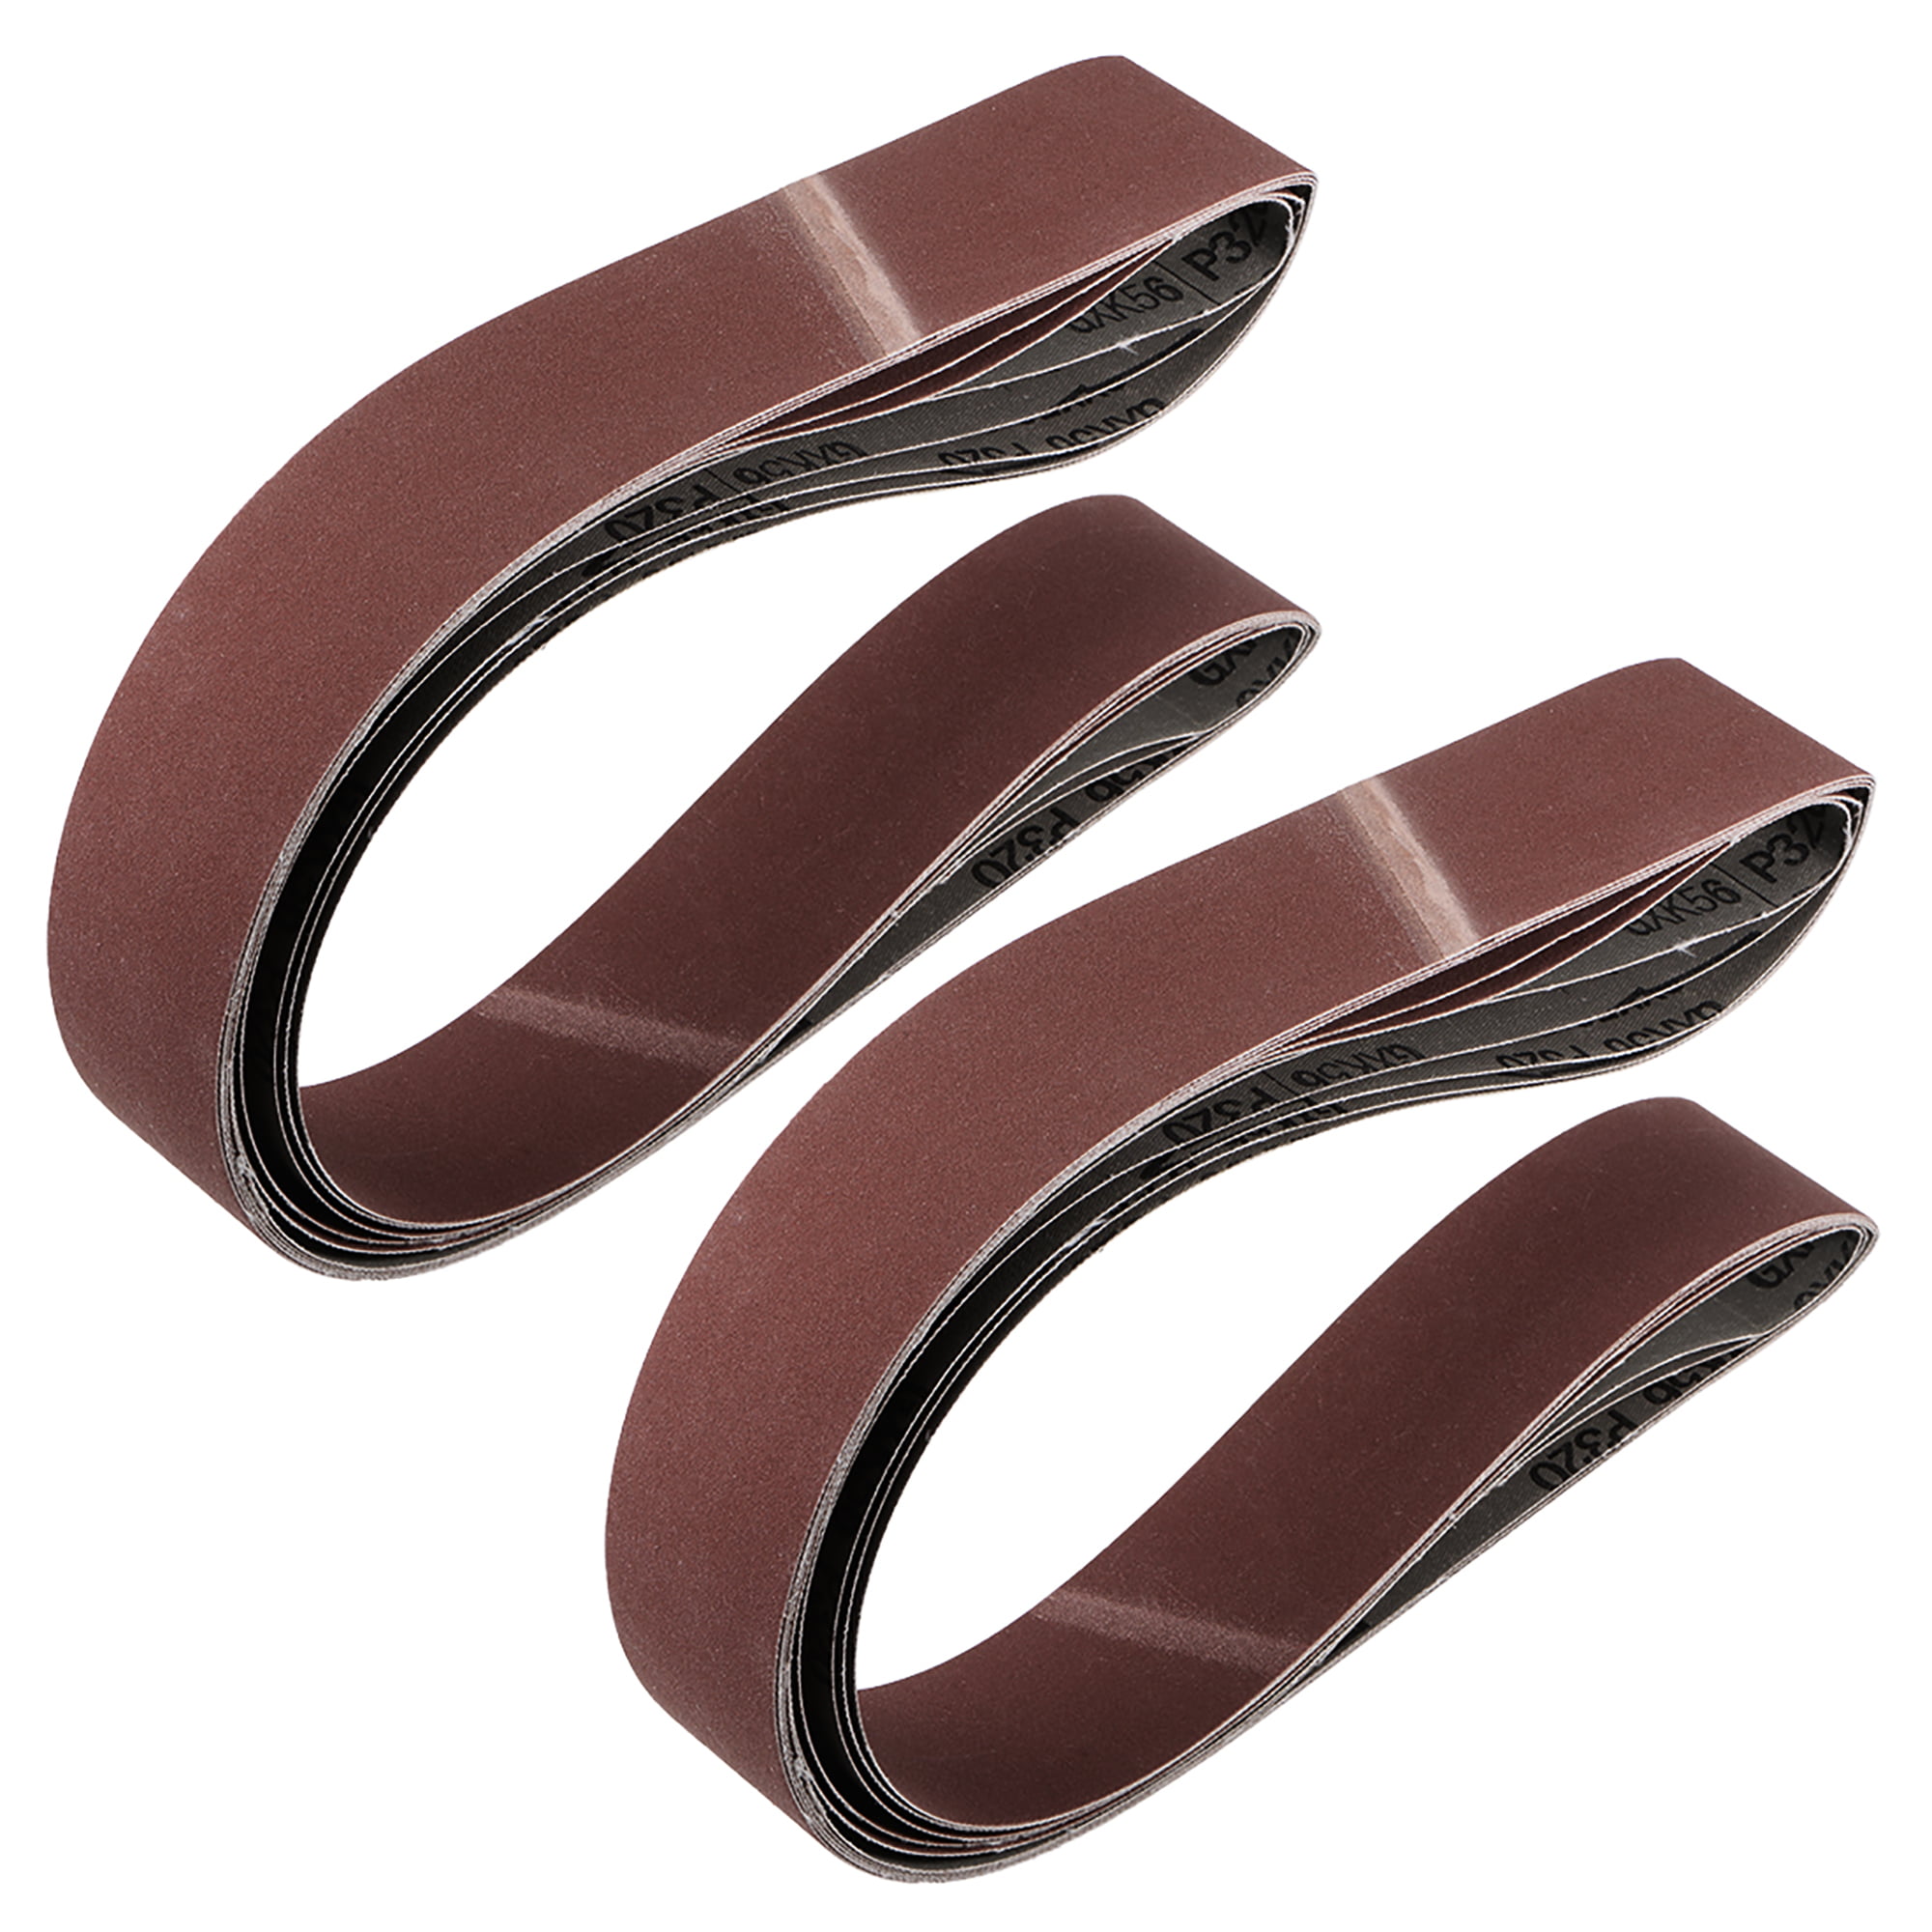 2 x 48 Inch Sanding Belt 320 Grit Sand Belts for Belt Sander 3pcs